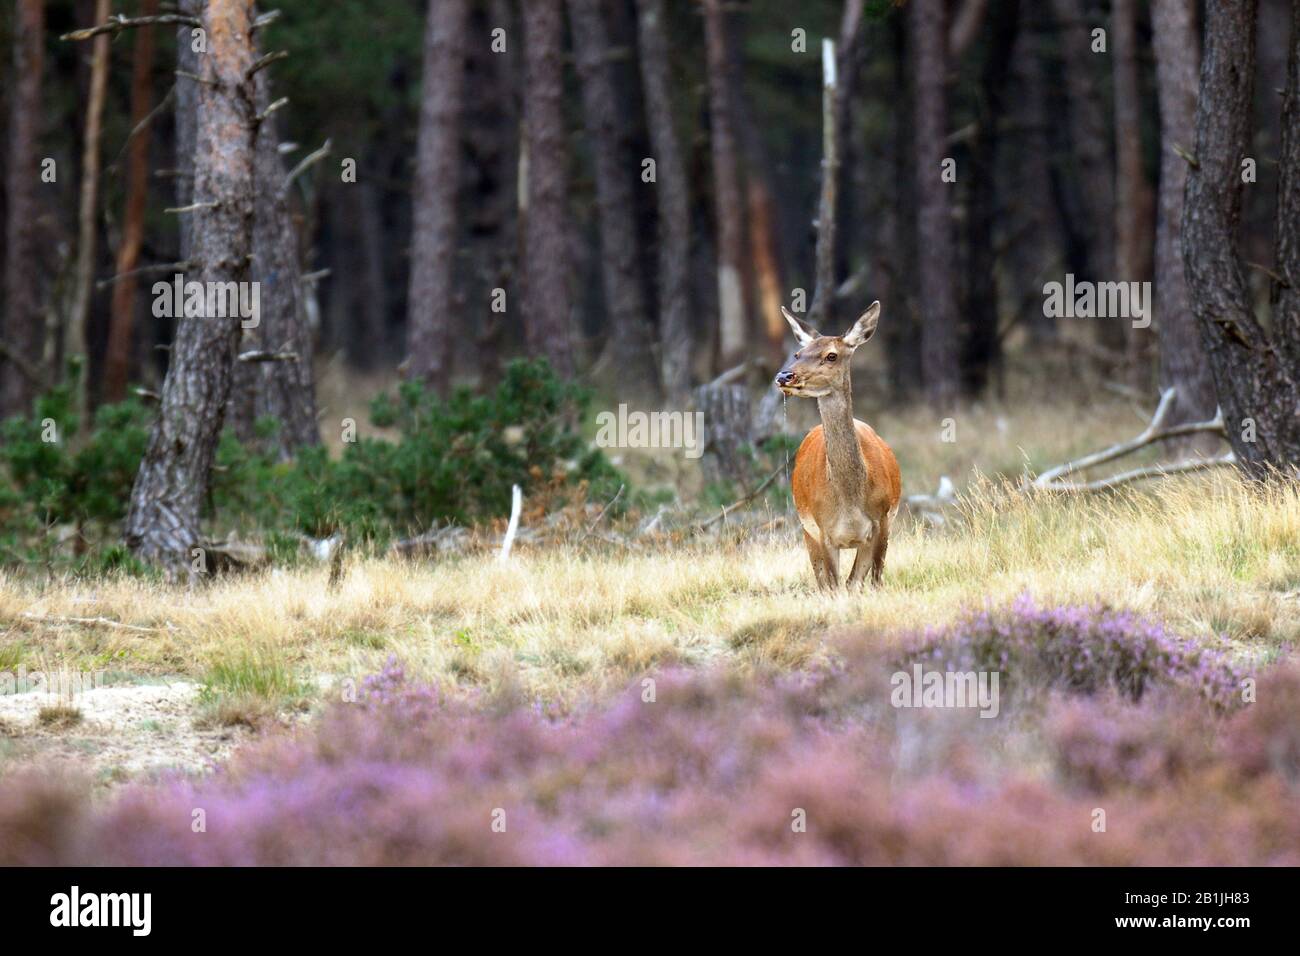 red deer (Cervus elaphus), hind in forest, Netherlands, Gelderland, Hoge Veluwe National Park Stock Photo